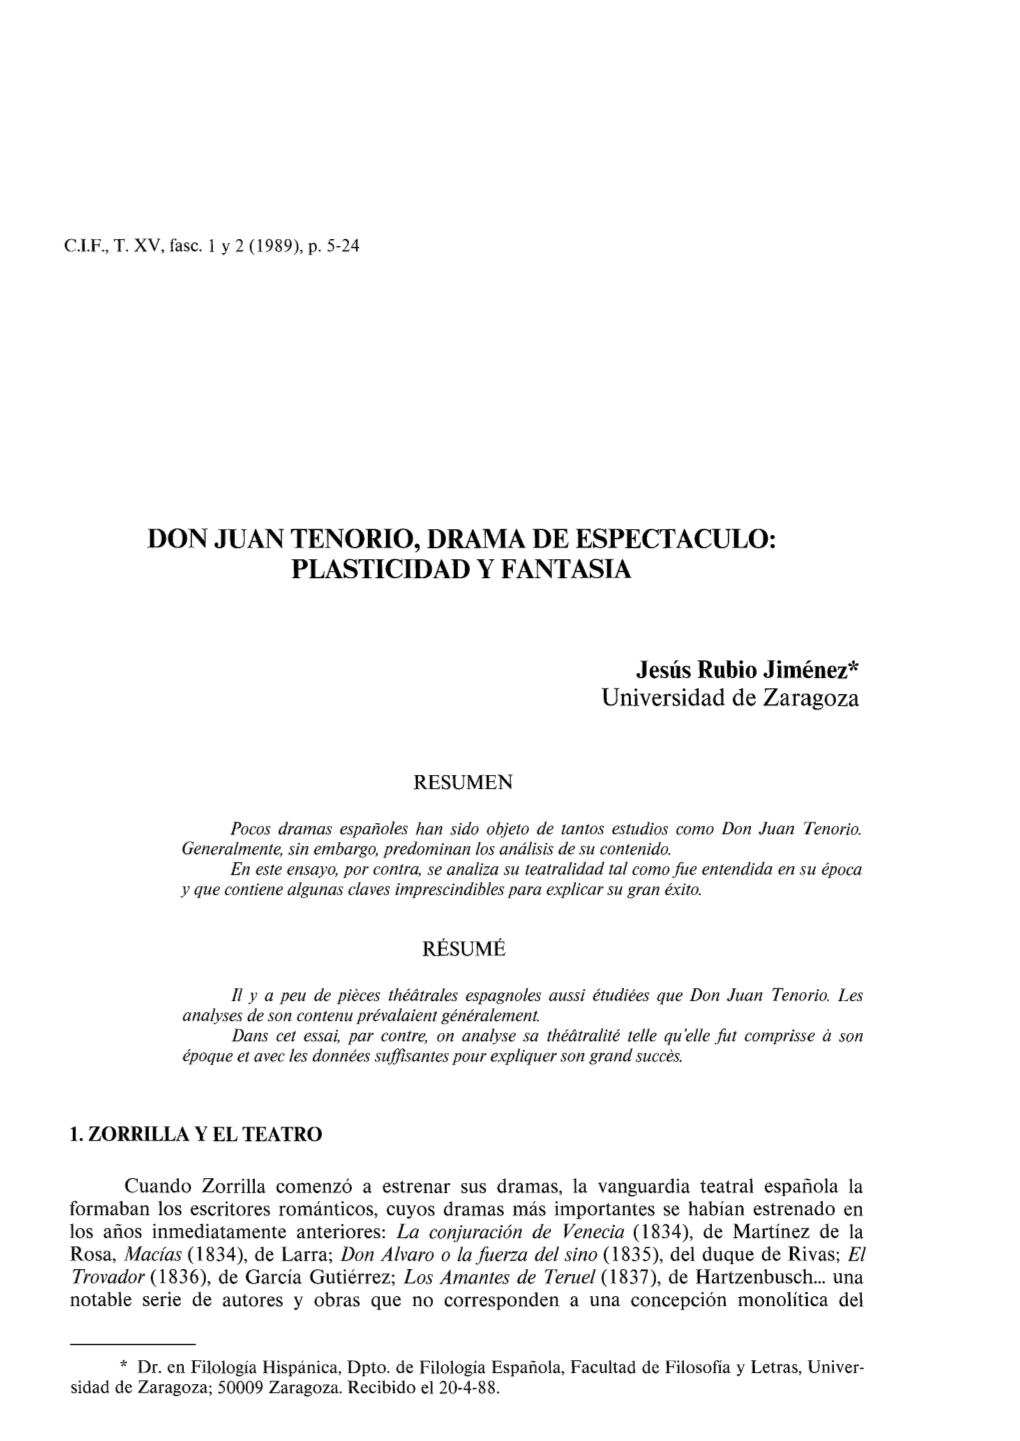 Don Juan Tenorio, Drama De Espectaculo: Plasticidad Y Fantasia